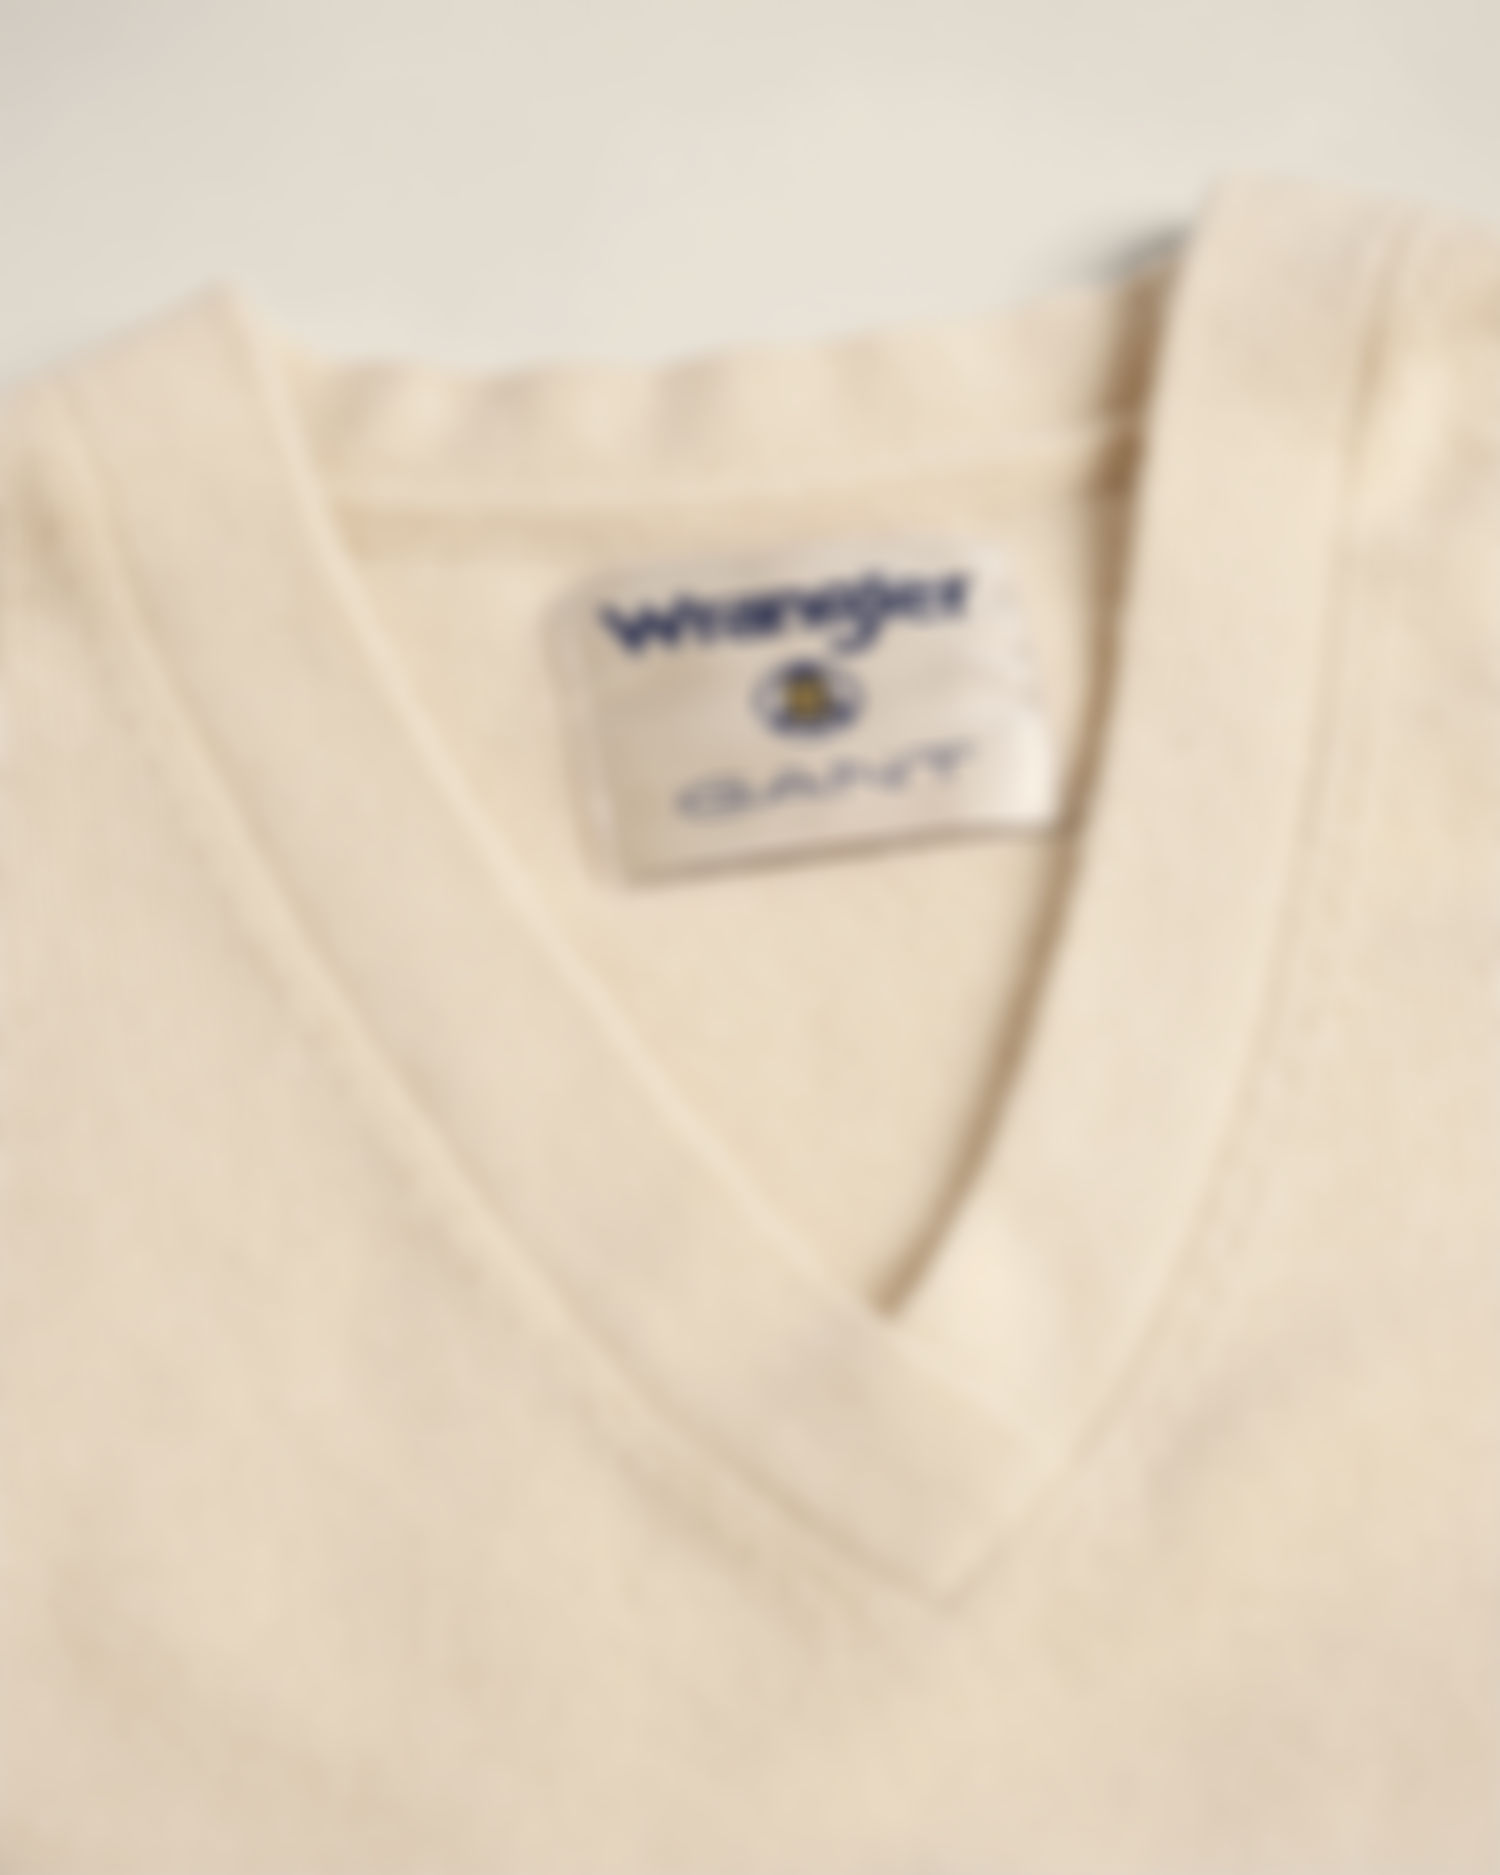 GANT x Wrangler Varsity Cashmere Blend V-Neck Sweater